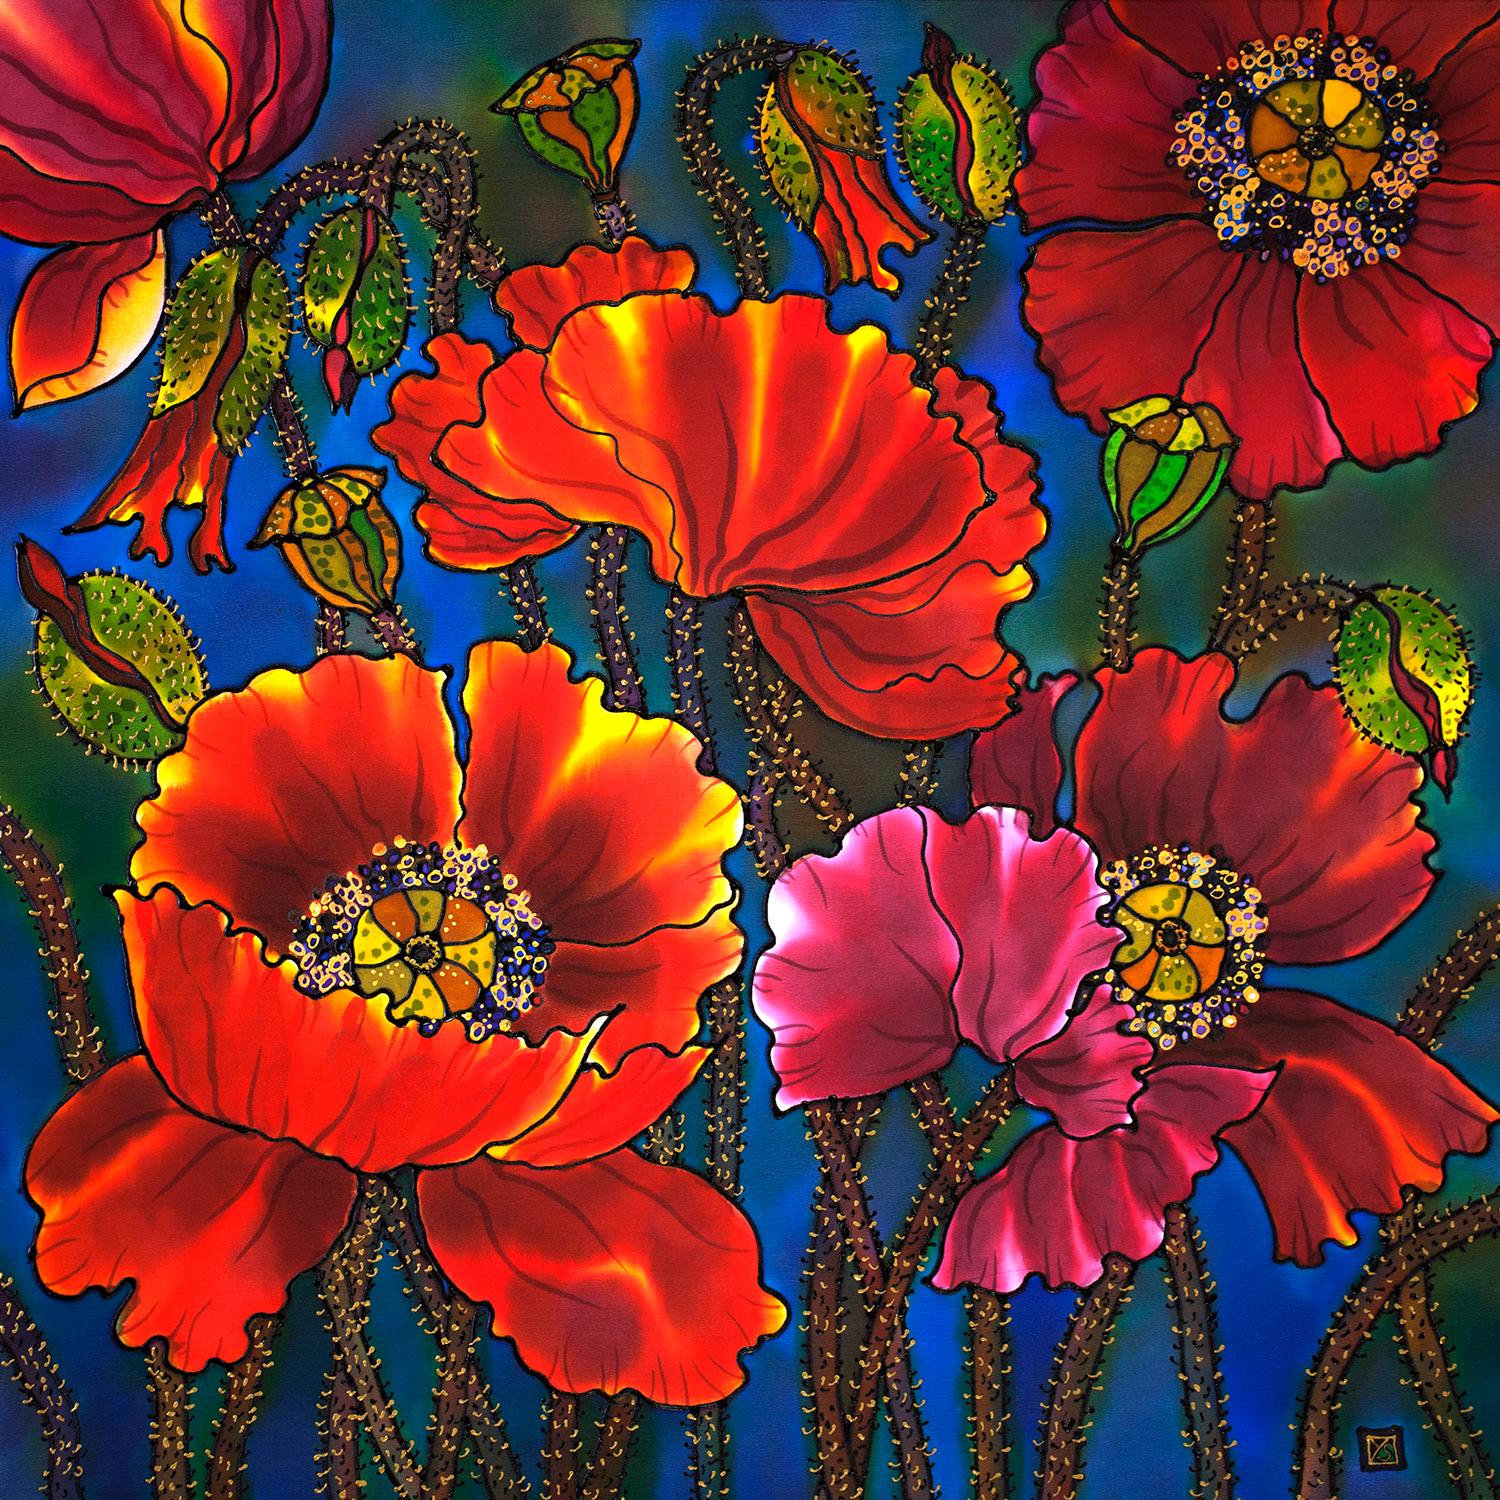 Poppies 2 - Mixed Media Art by Yelena Sidorova